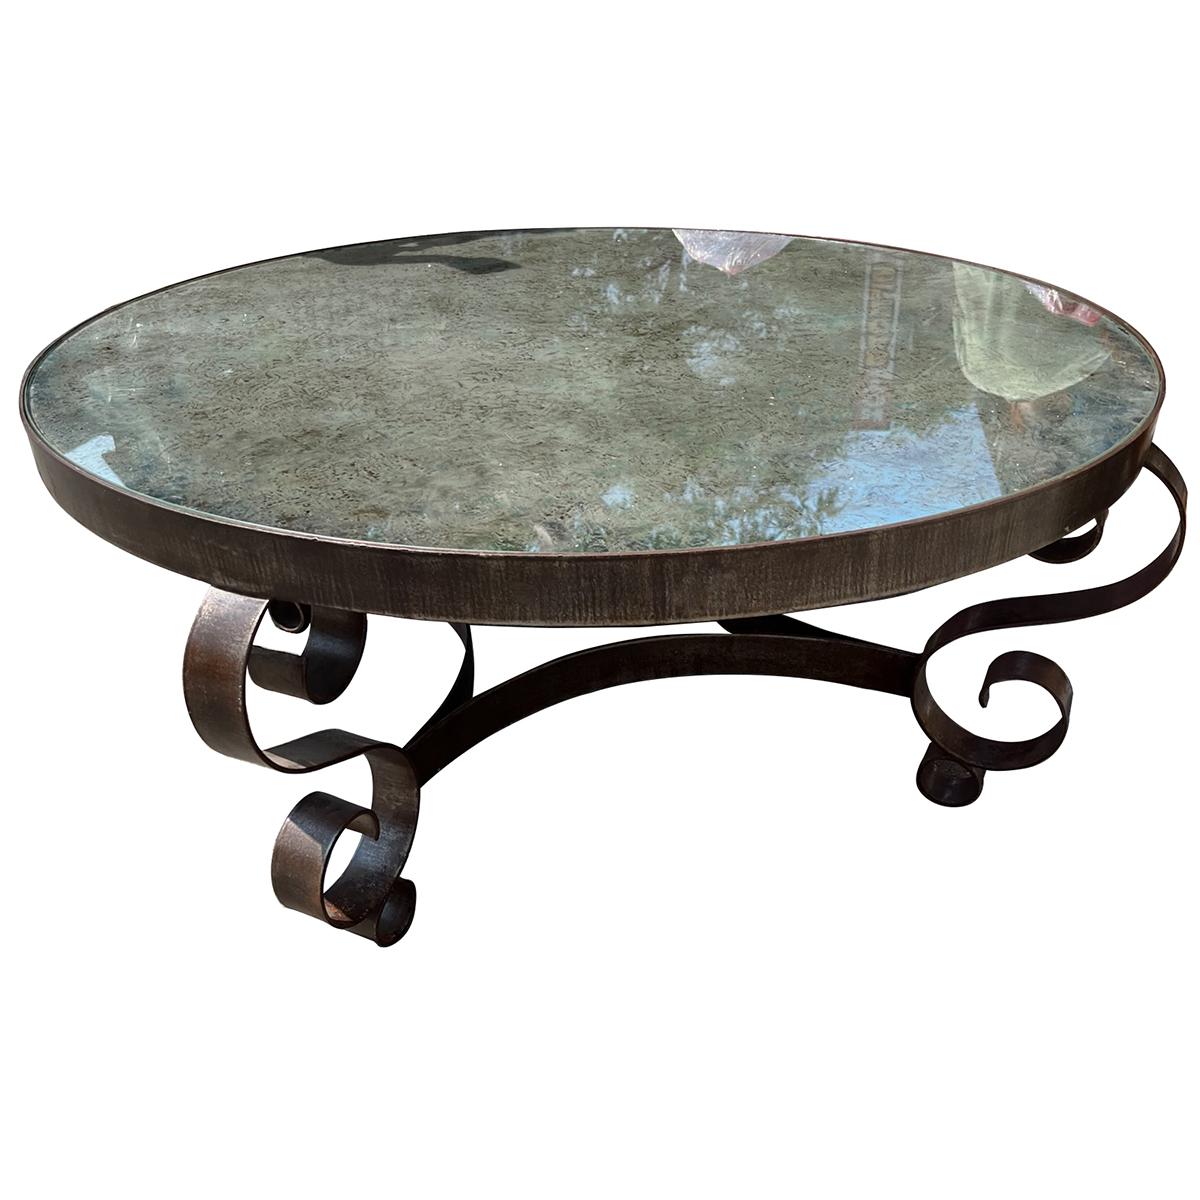 Ein runder französischer Tisch aus Schmiedeeisen mit Spiegelplatte aus den 1920er Jahren.

Abmessungen:
Durchmesser: 41,5